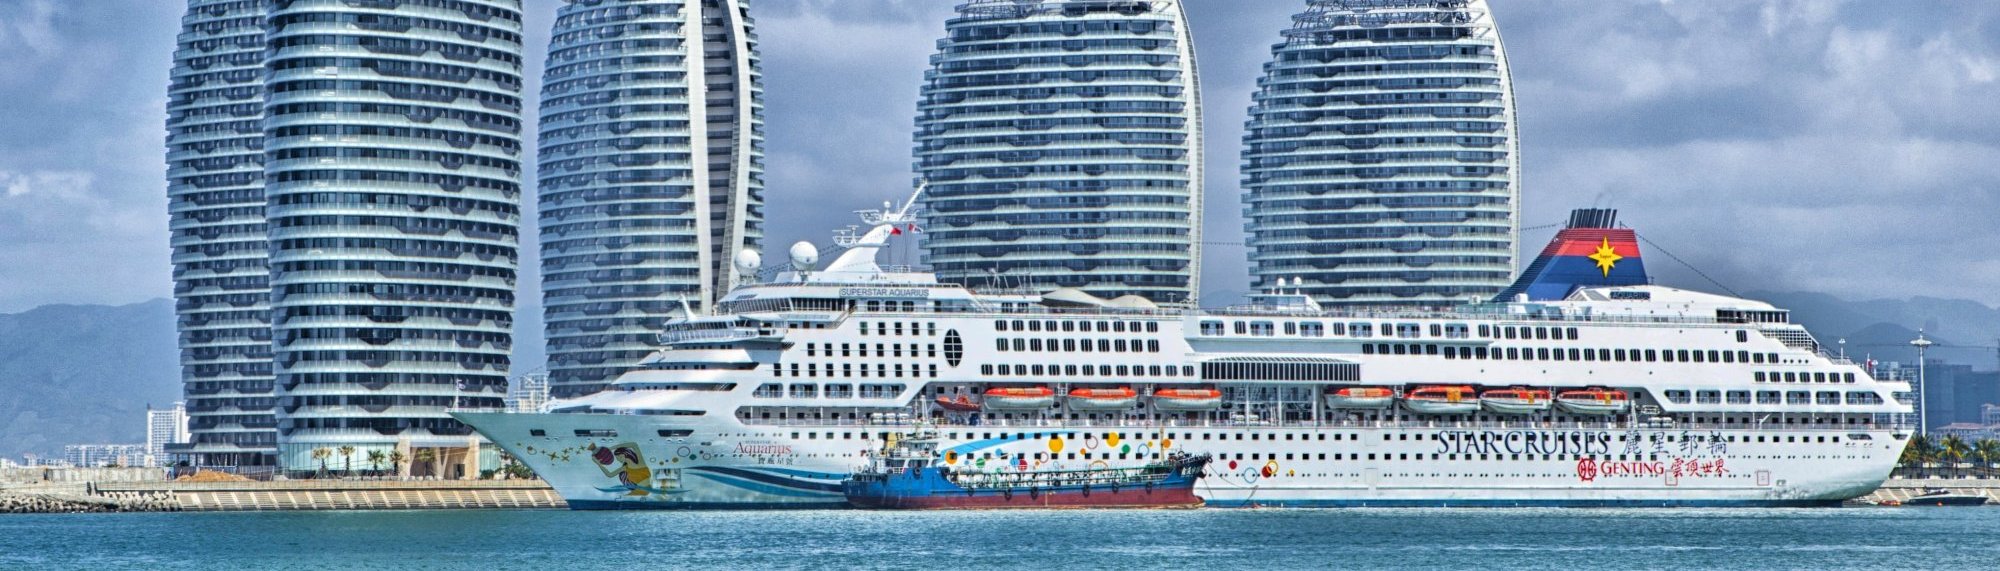 Reserva de cruceros online | Msc Cruceros | Costa Cruceros | NCL | ....:.Nauticaviajes.Com